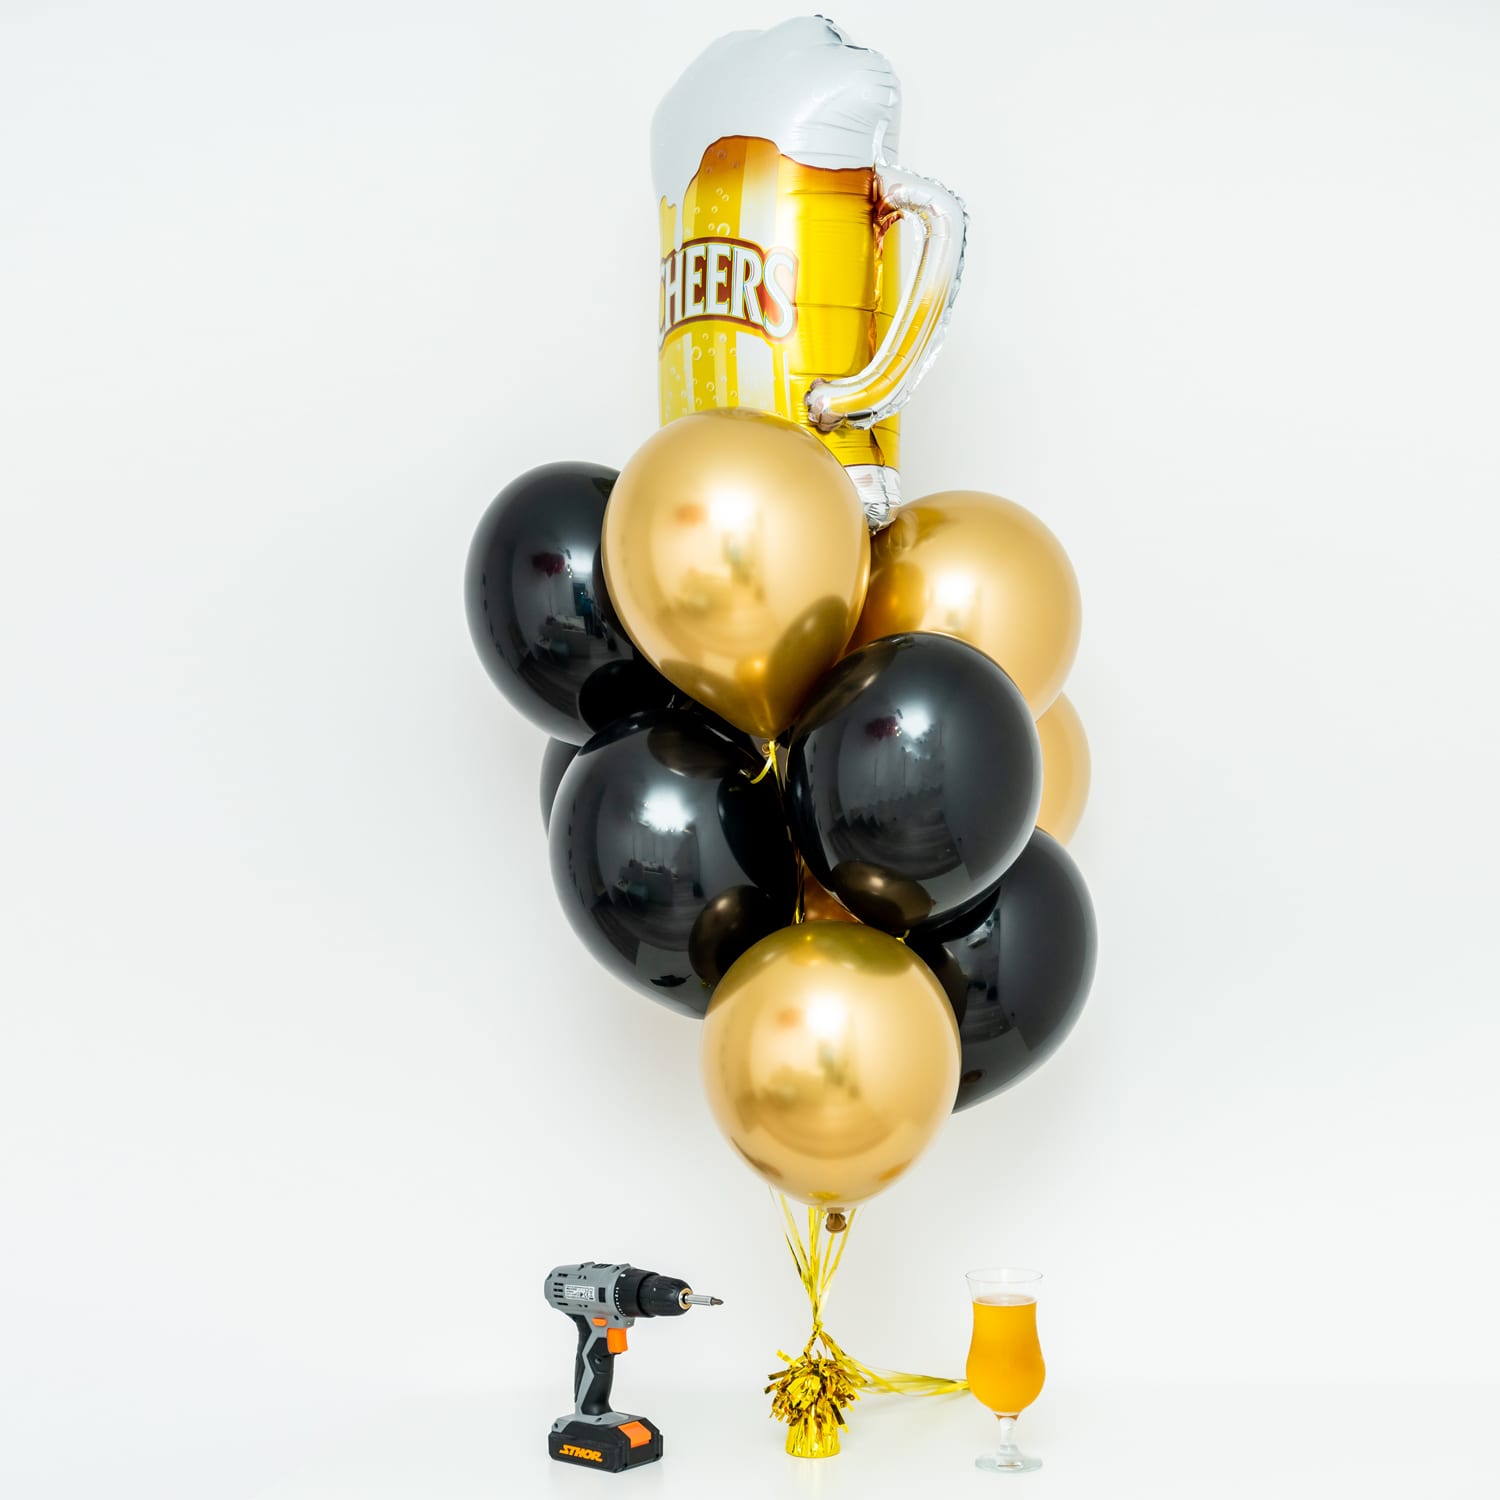 Bukiet balonowy: Beer Time, napełniony helem Balony na dzień Babci i Dziadka Szalony.pl - Sklep imprezowy